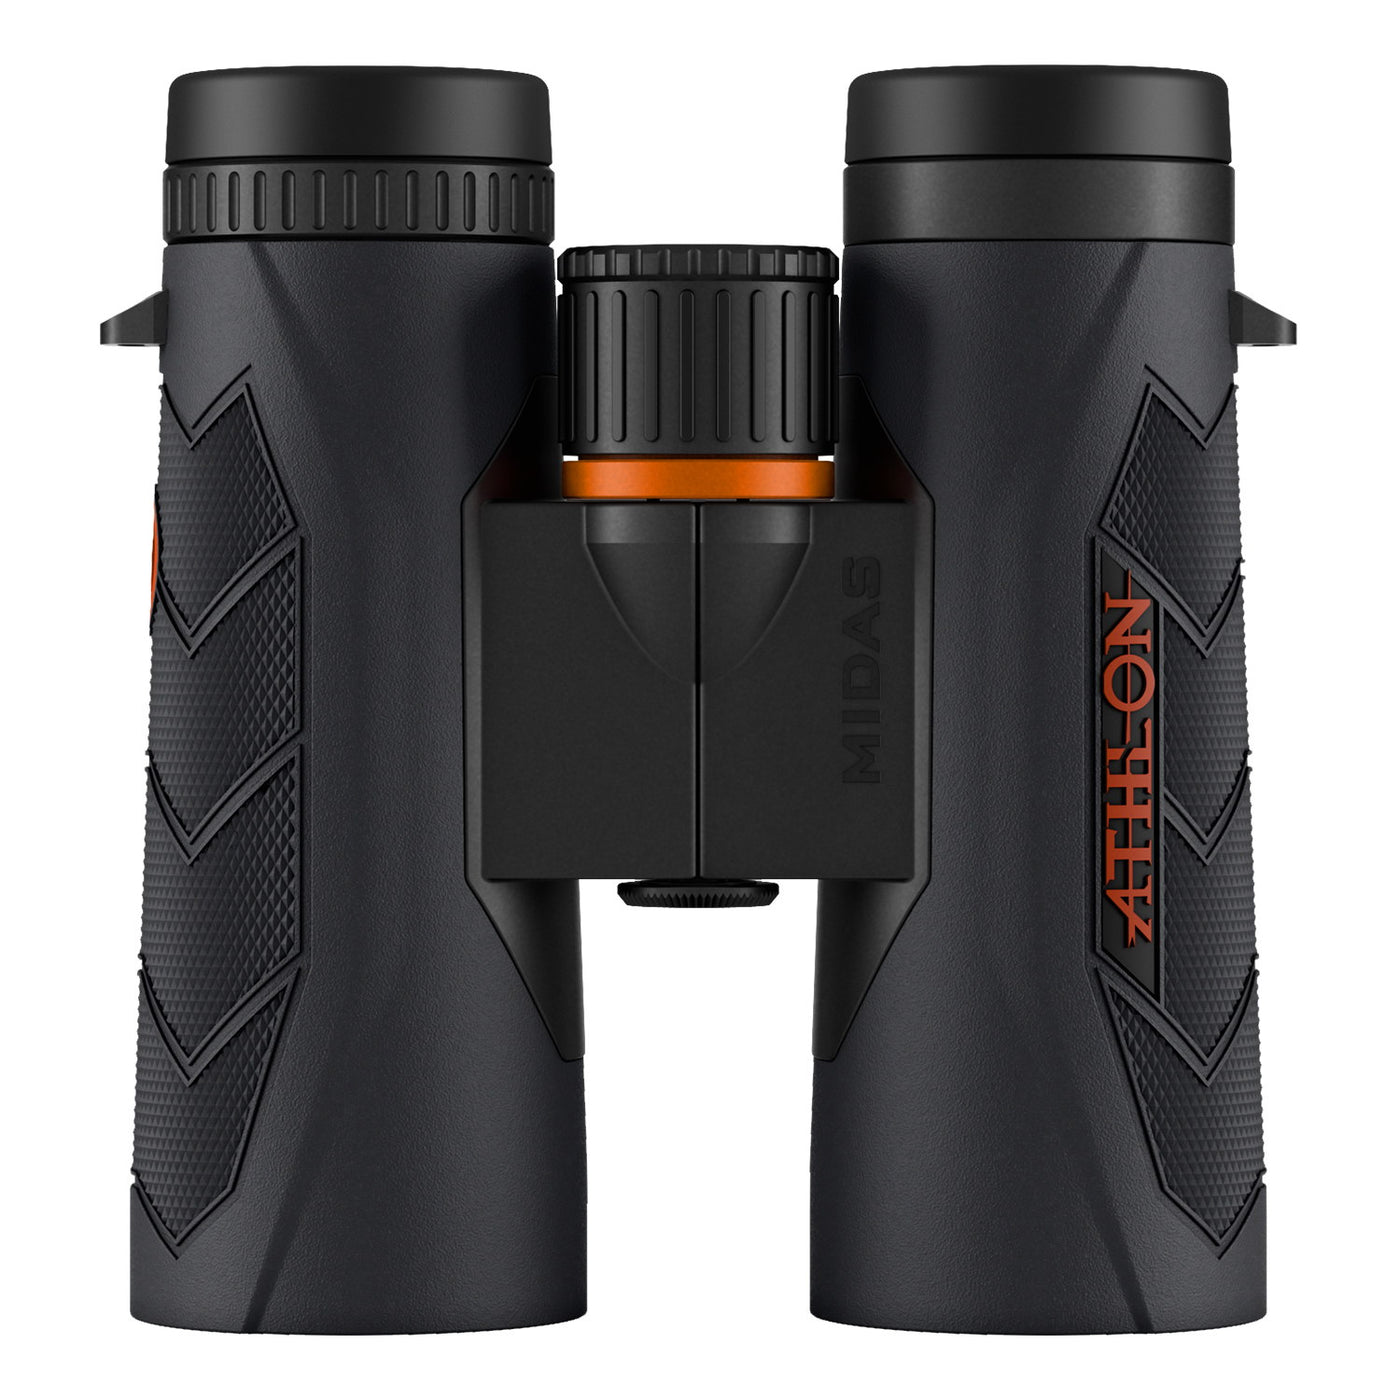 Athlon Midas UHD 10x42mm binocular